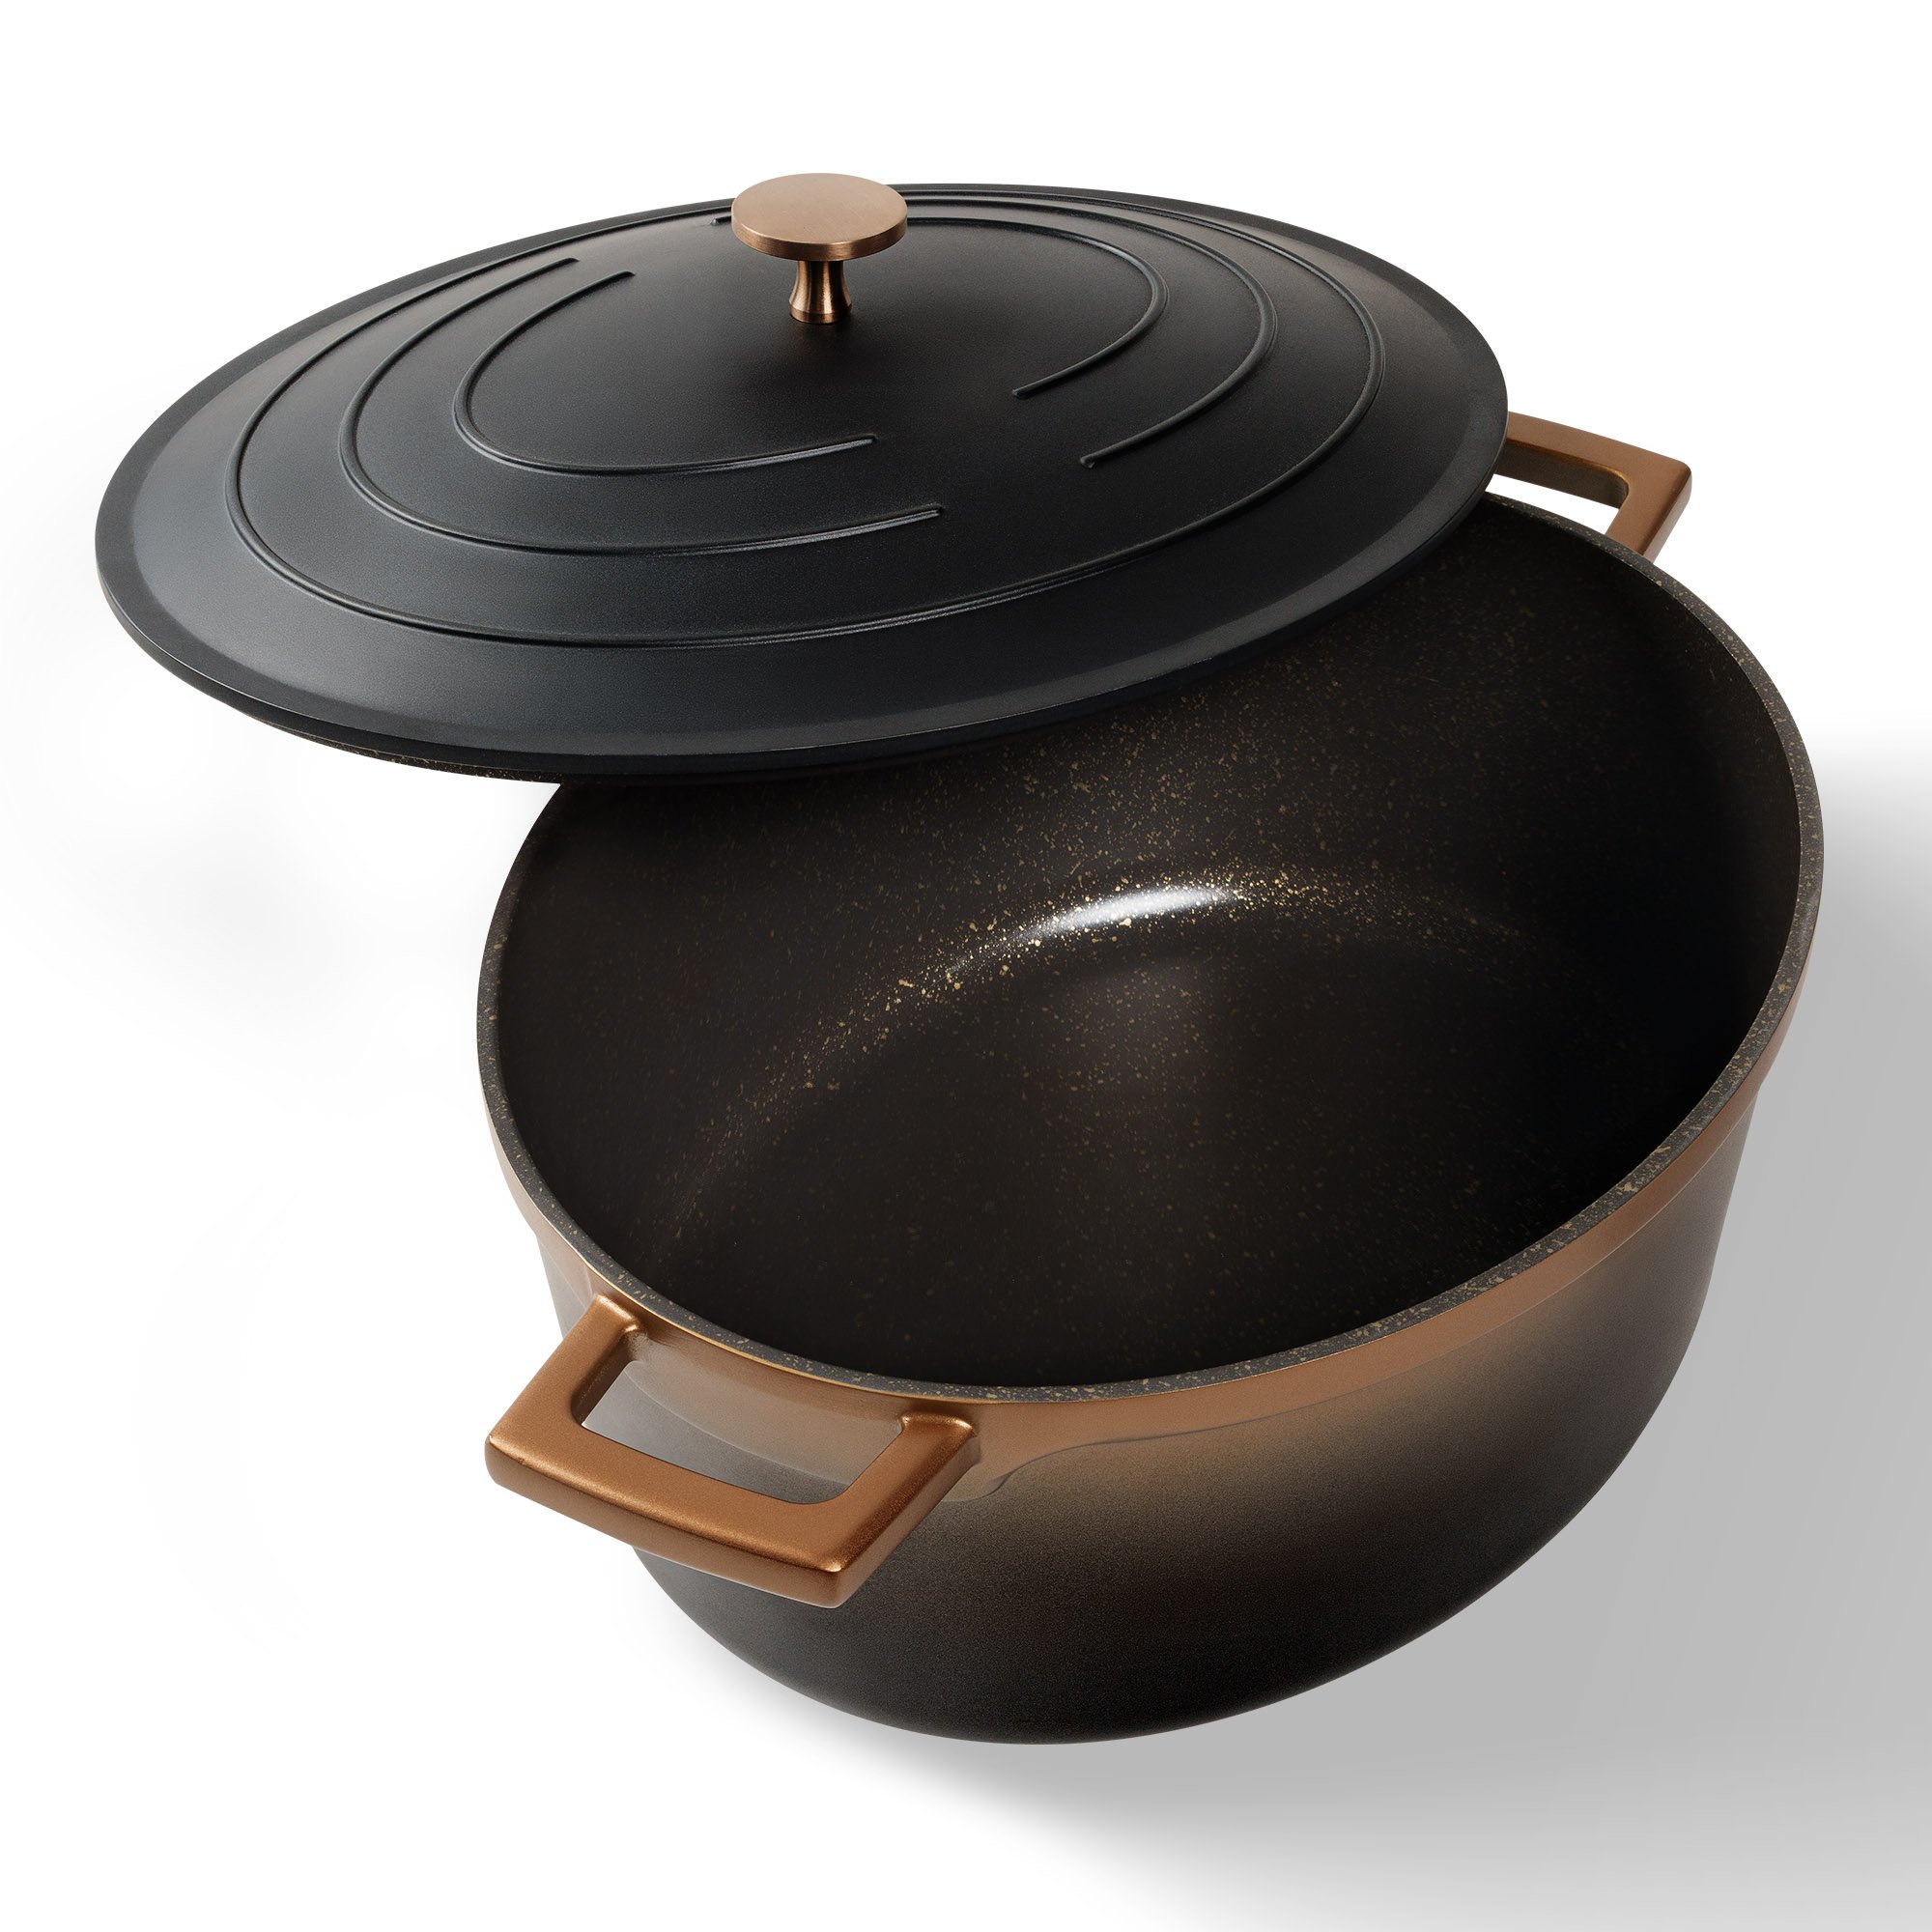 STONELINE® Roségold Tostapane Gourmet 32x25 cm con coperchio, adatto al forno e all'induzione, antiaderente